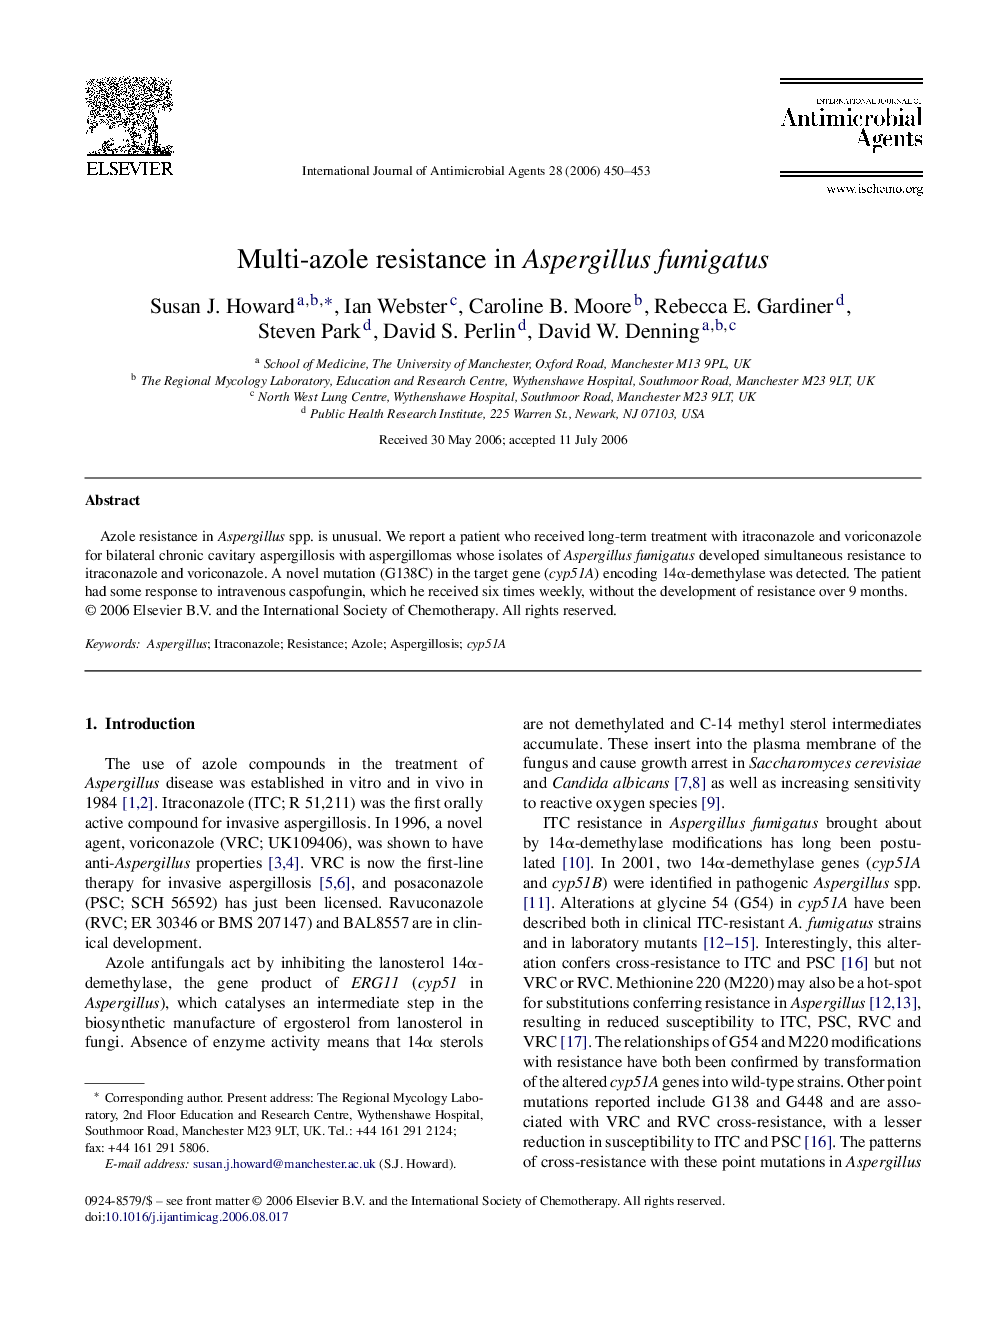 Multi-azole resistance in Aspergillus fumigatus